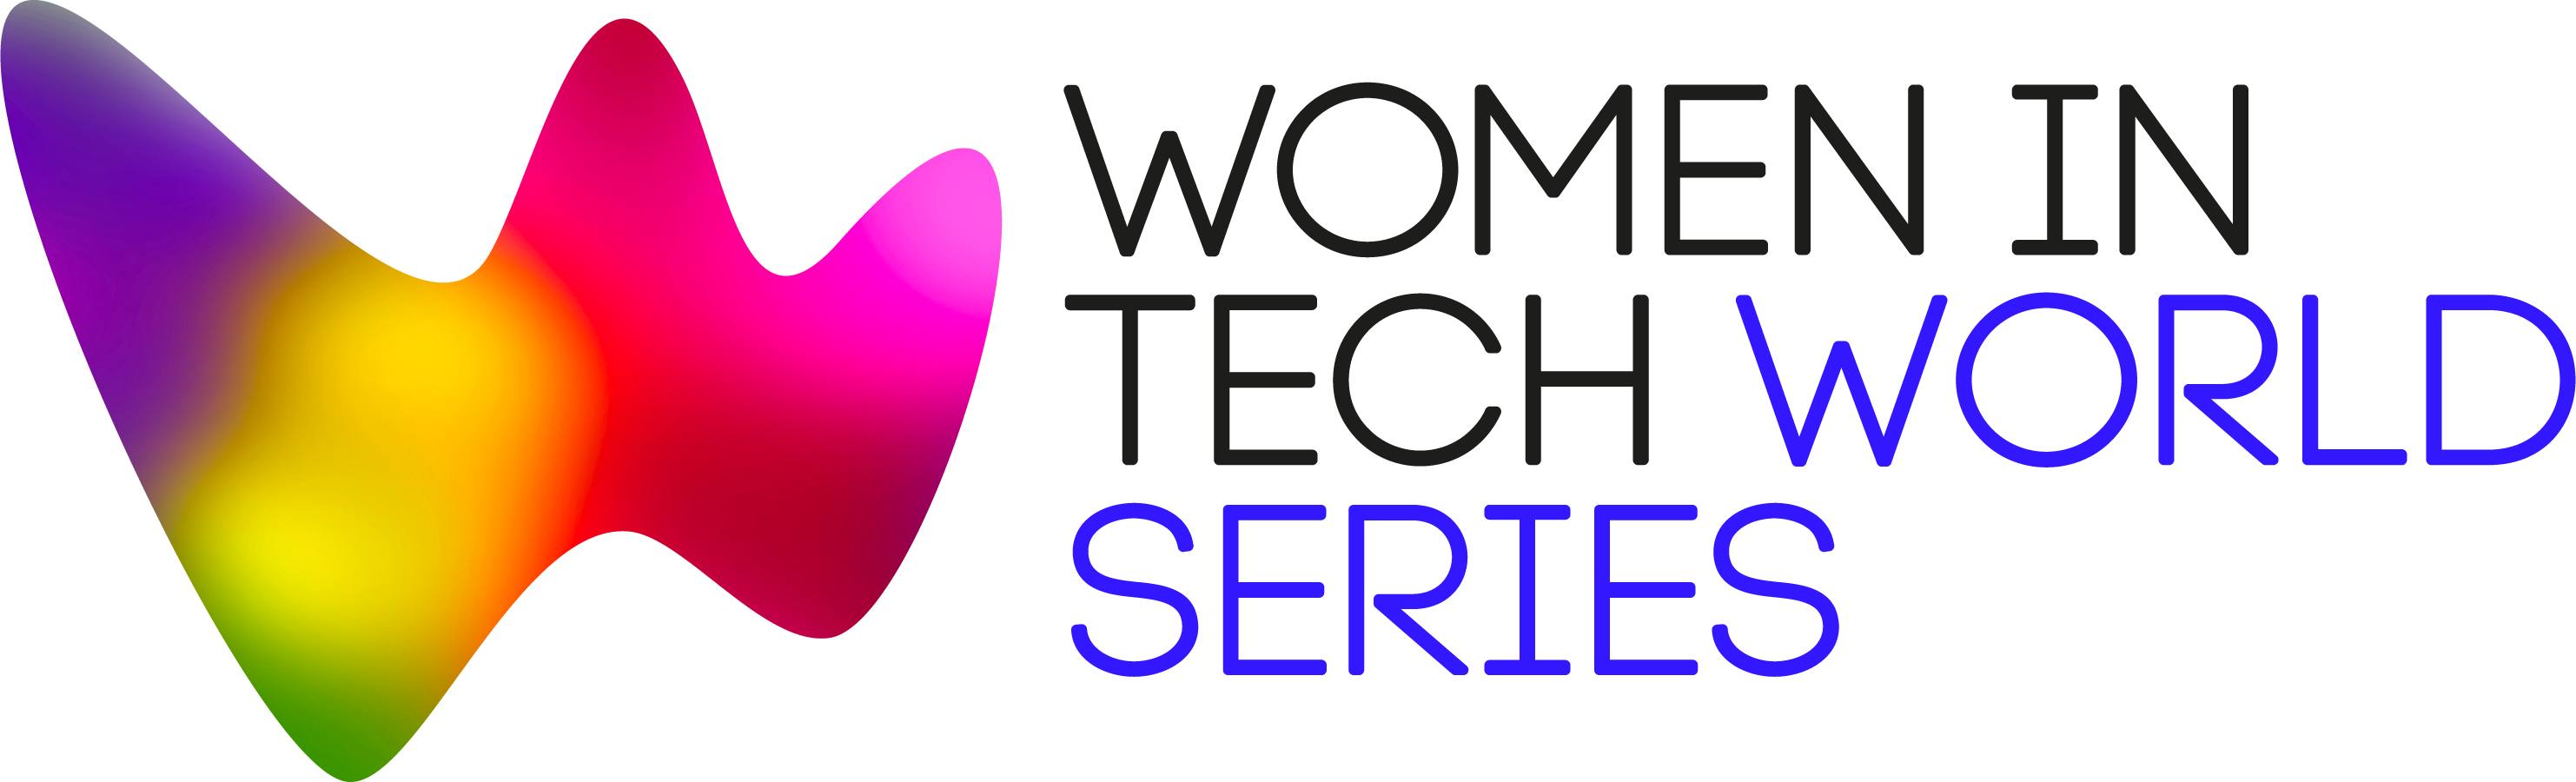 Women in Tech World Series logo